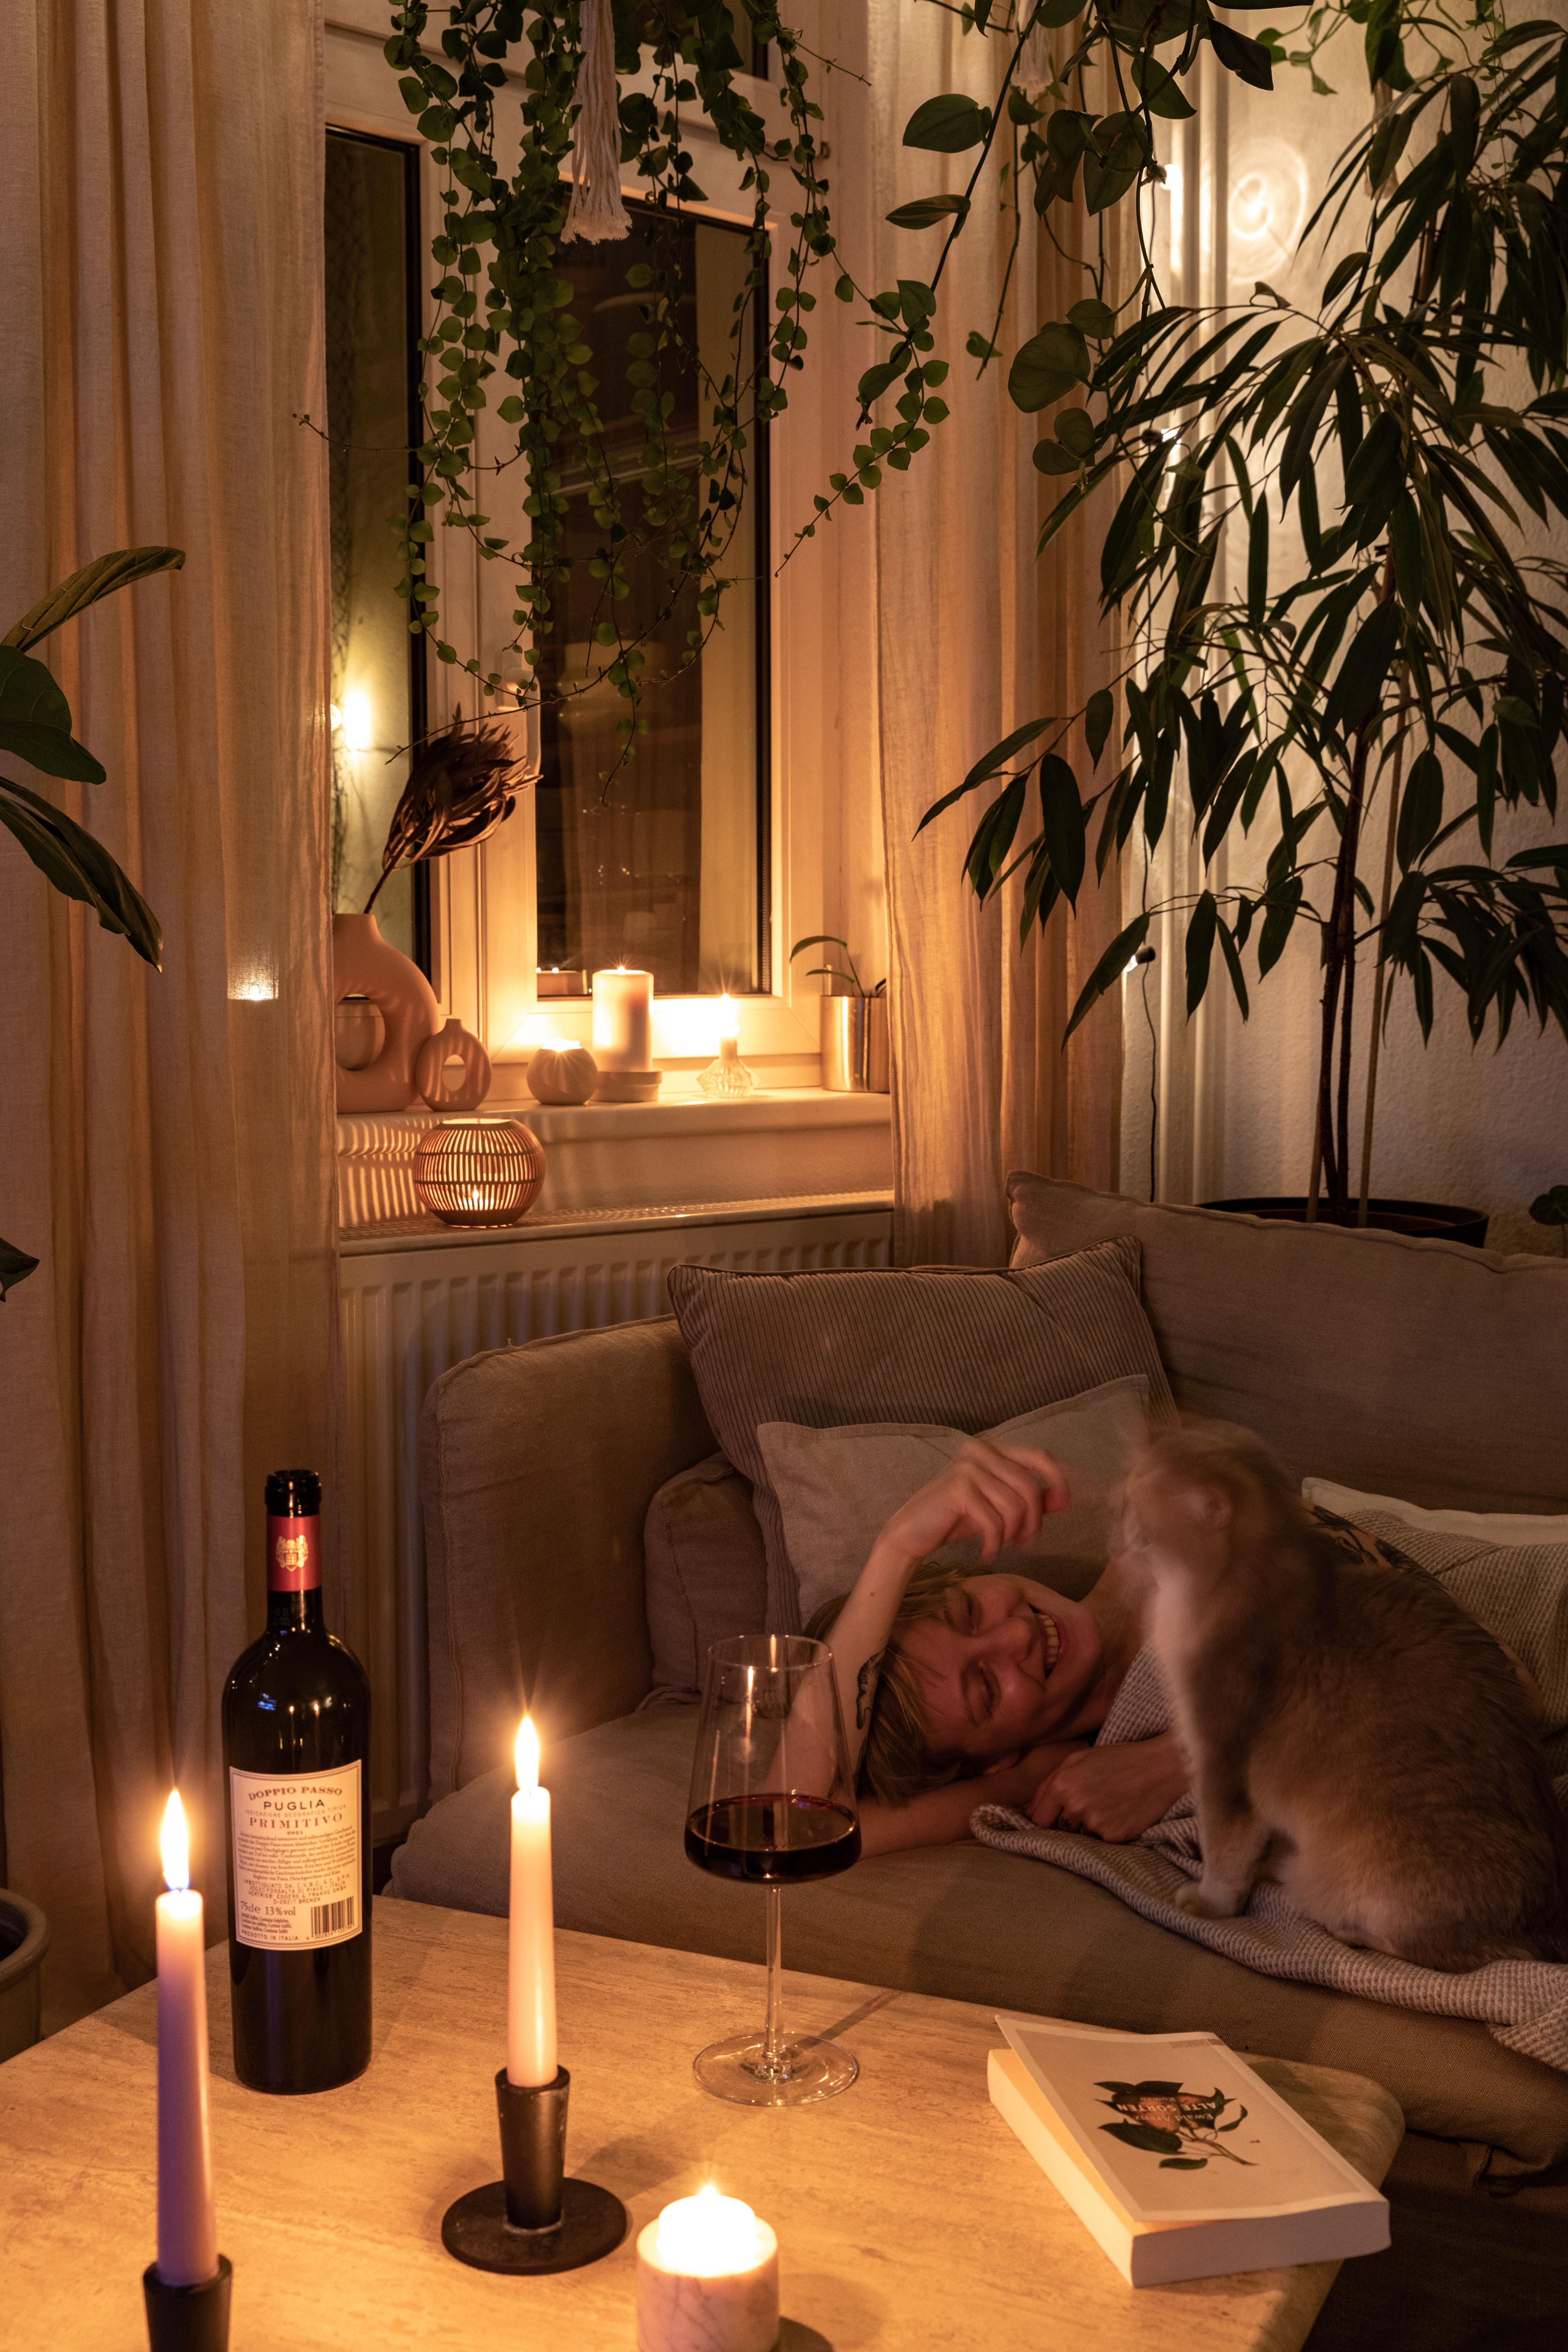 #metime mit Velvet und Wein, bei dem Erinnerungen an Puglia aufkommen #cozyvibes #livingroom #candlelight